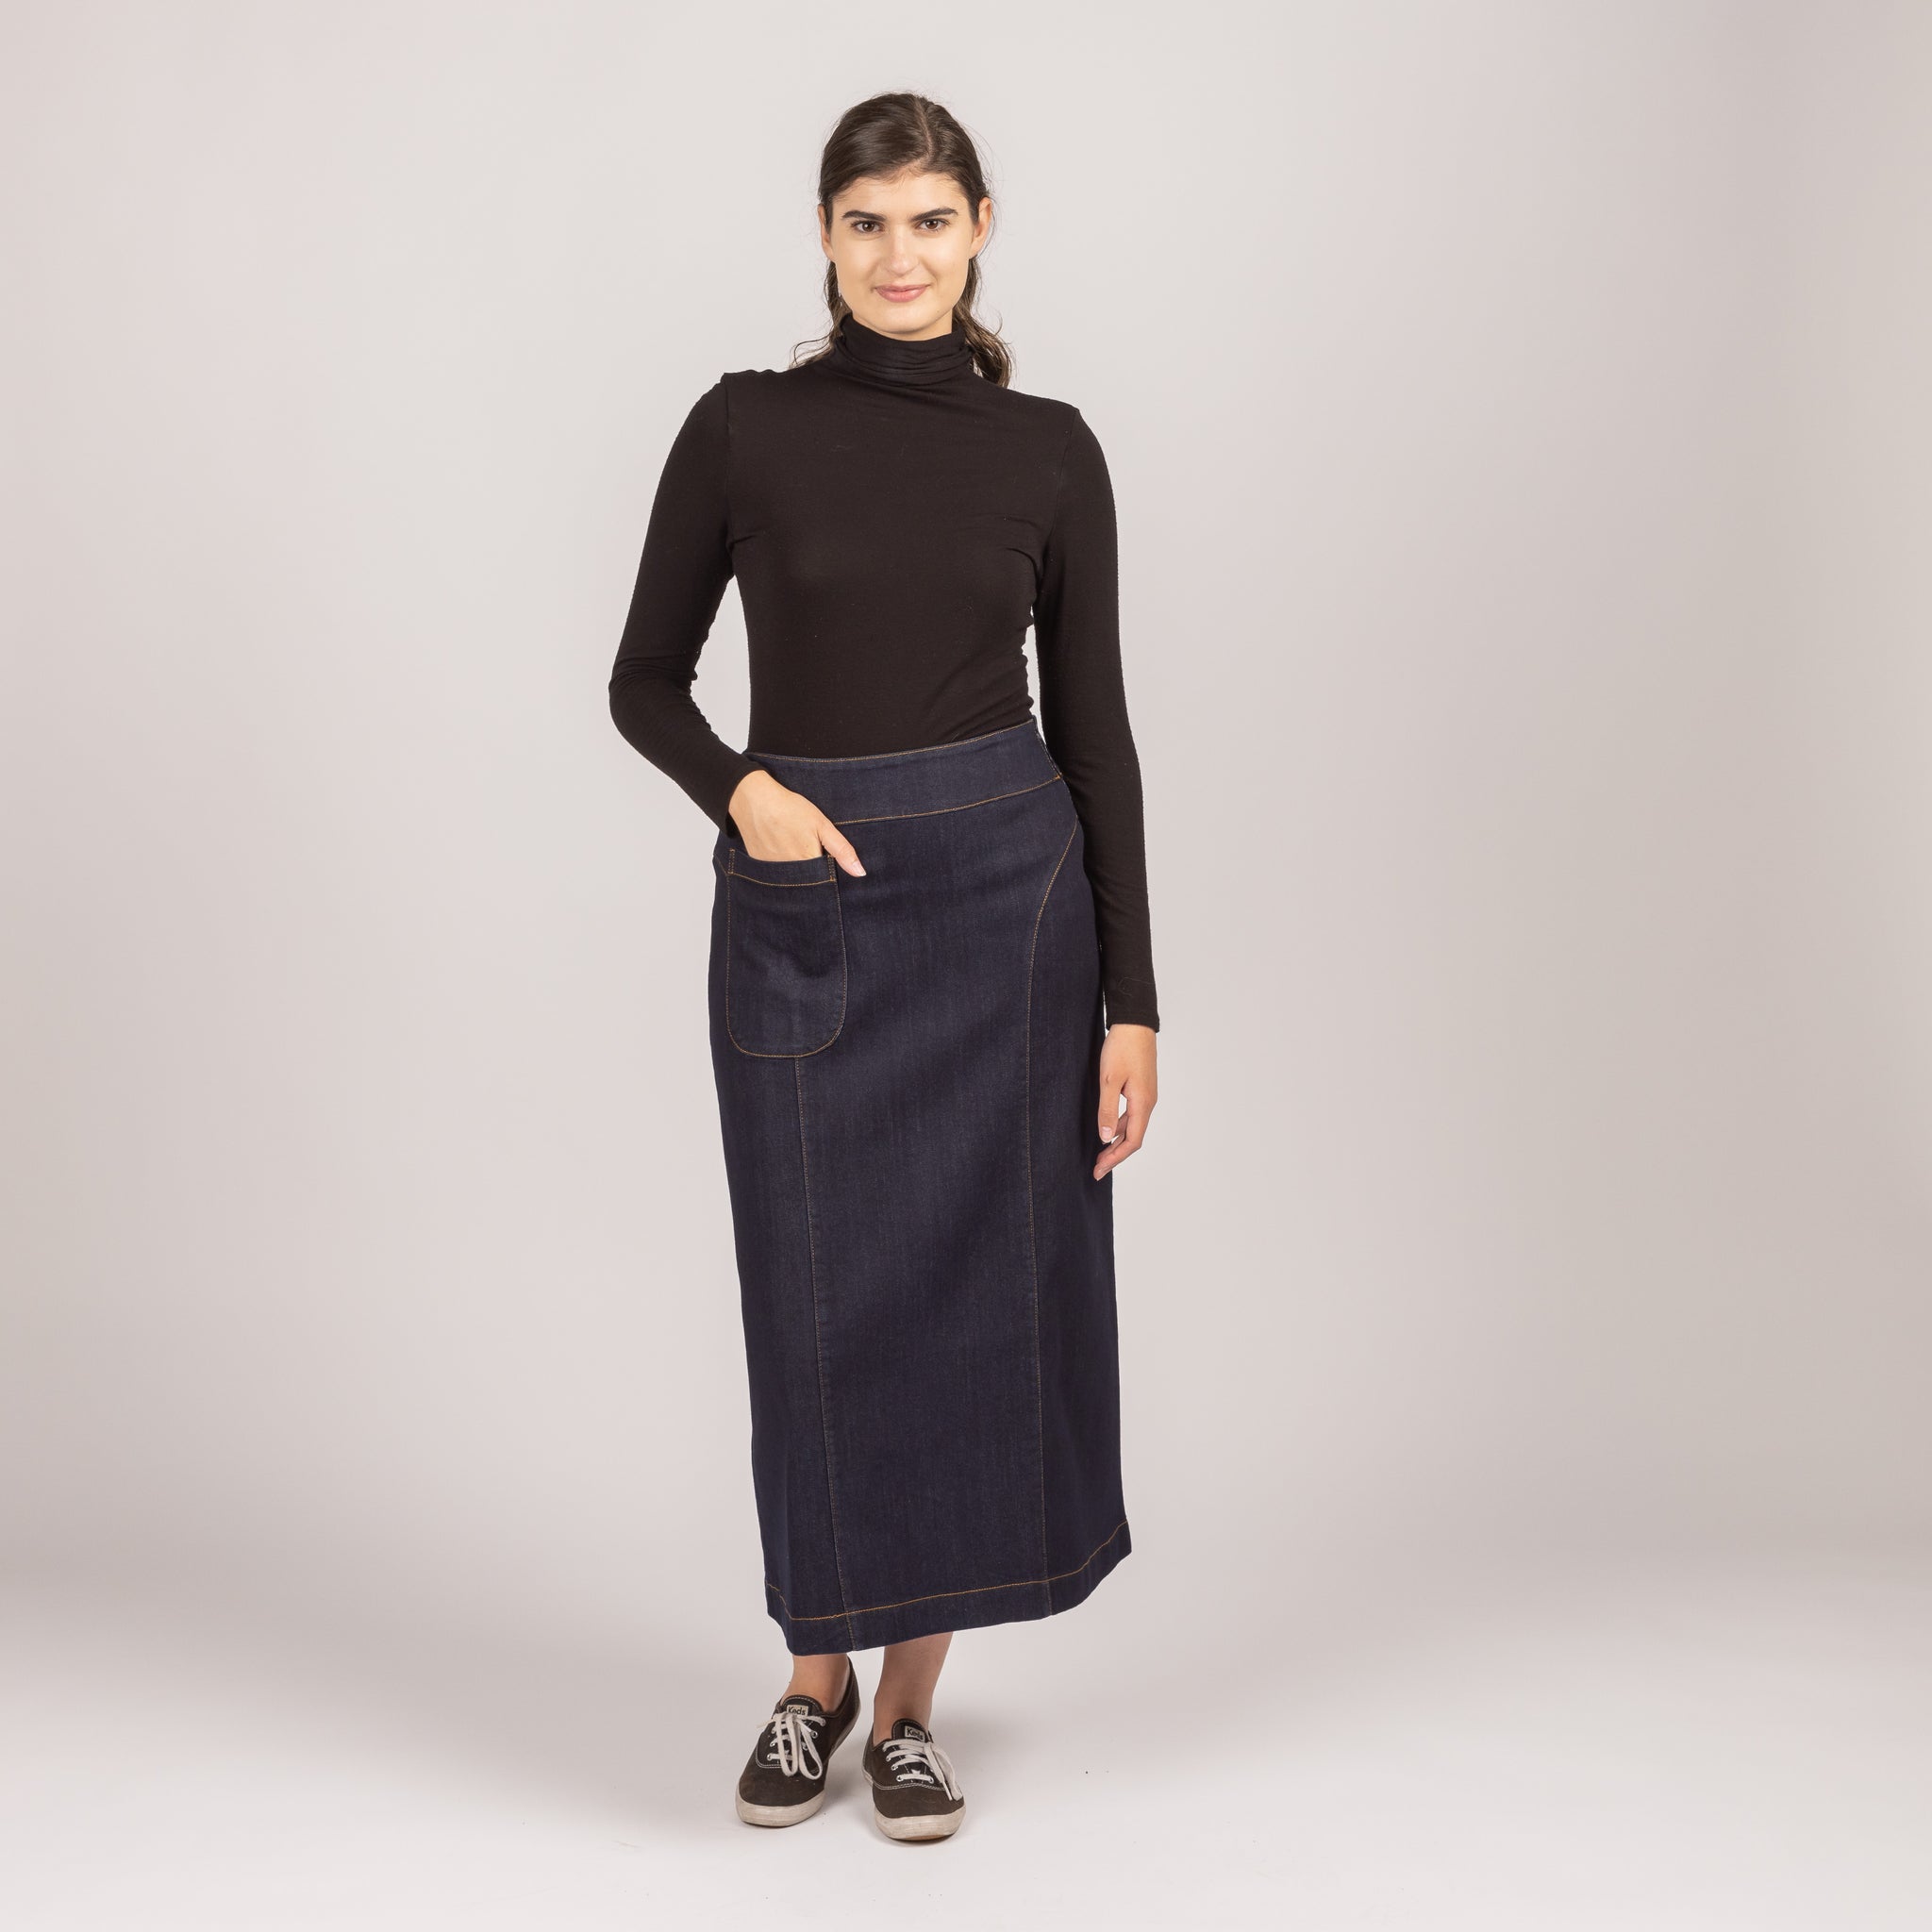 Buy Miss Chase Women's Black A-line Mini Denim Skirt(MCSS20DEN11-04-62-26, Black,26) at Amazon.in